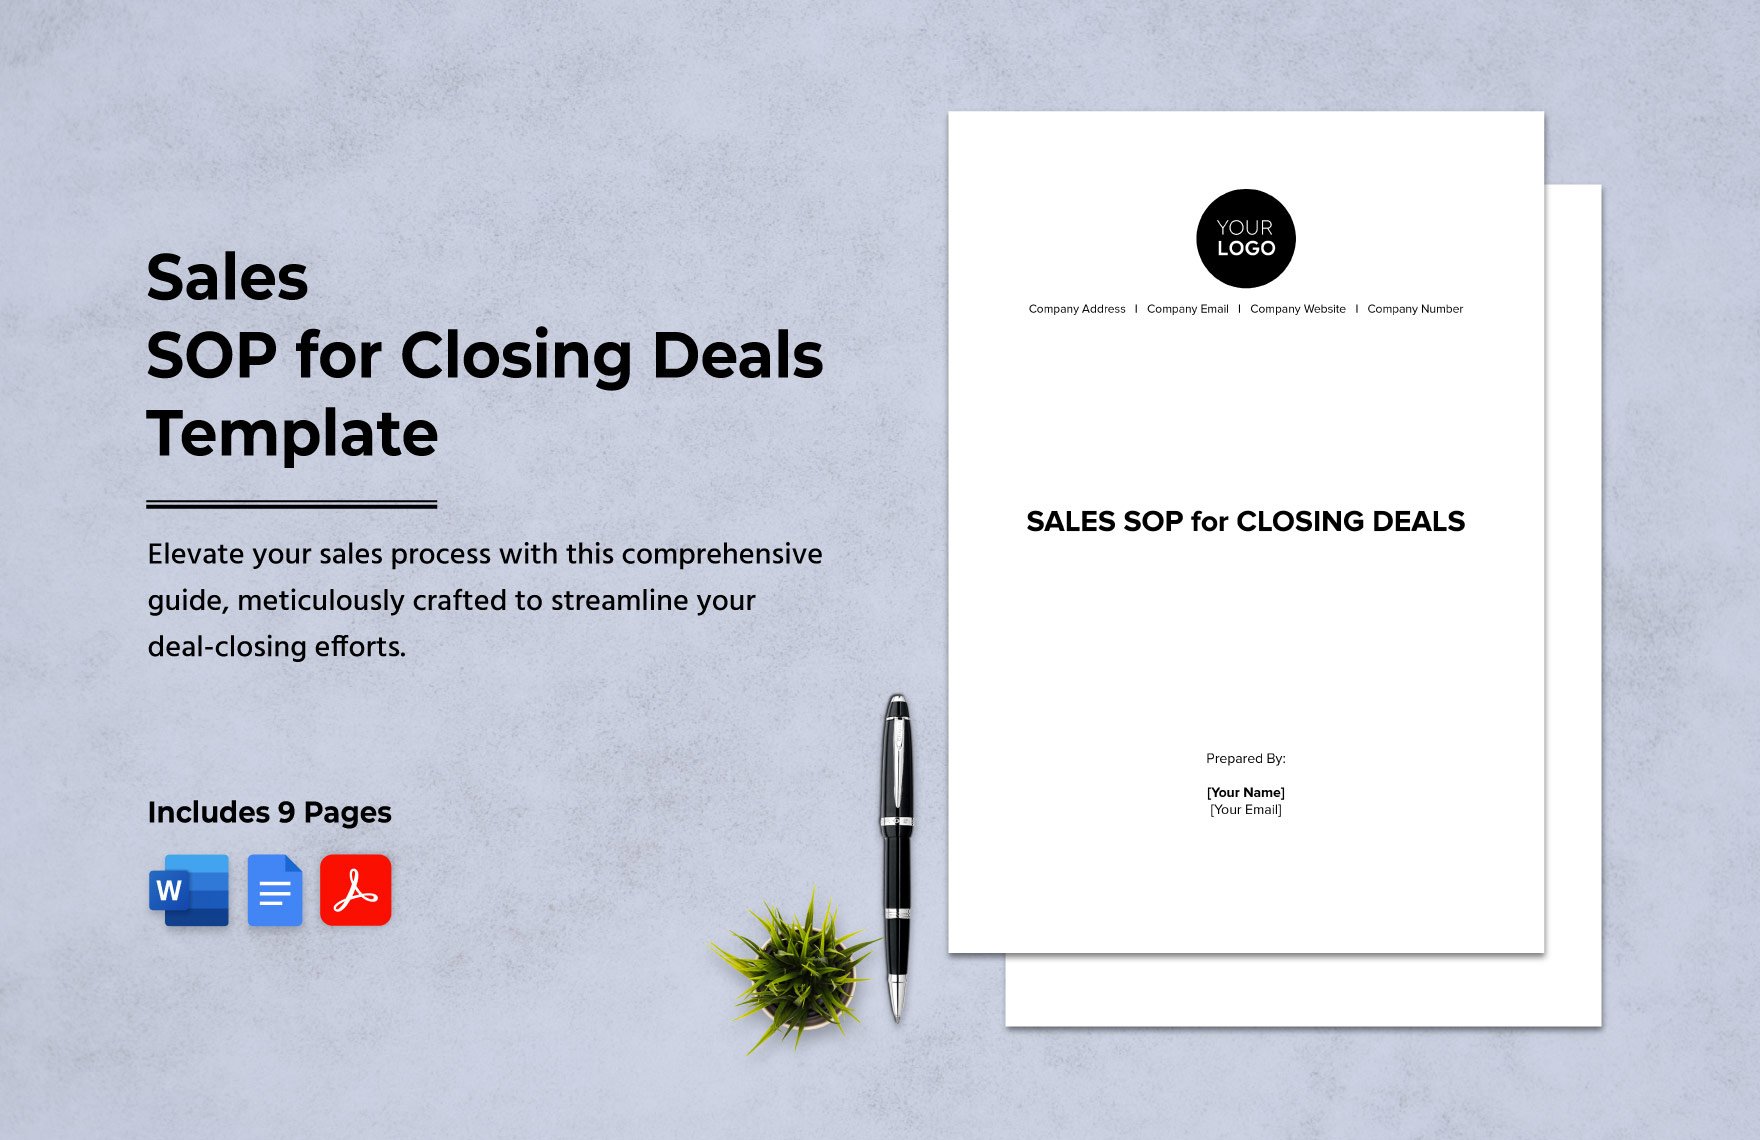 Sales SOP for Closing Deals Template